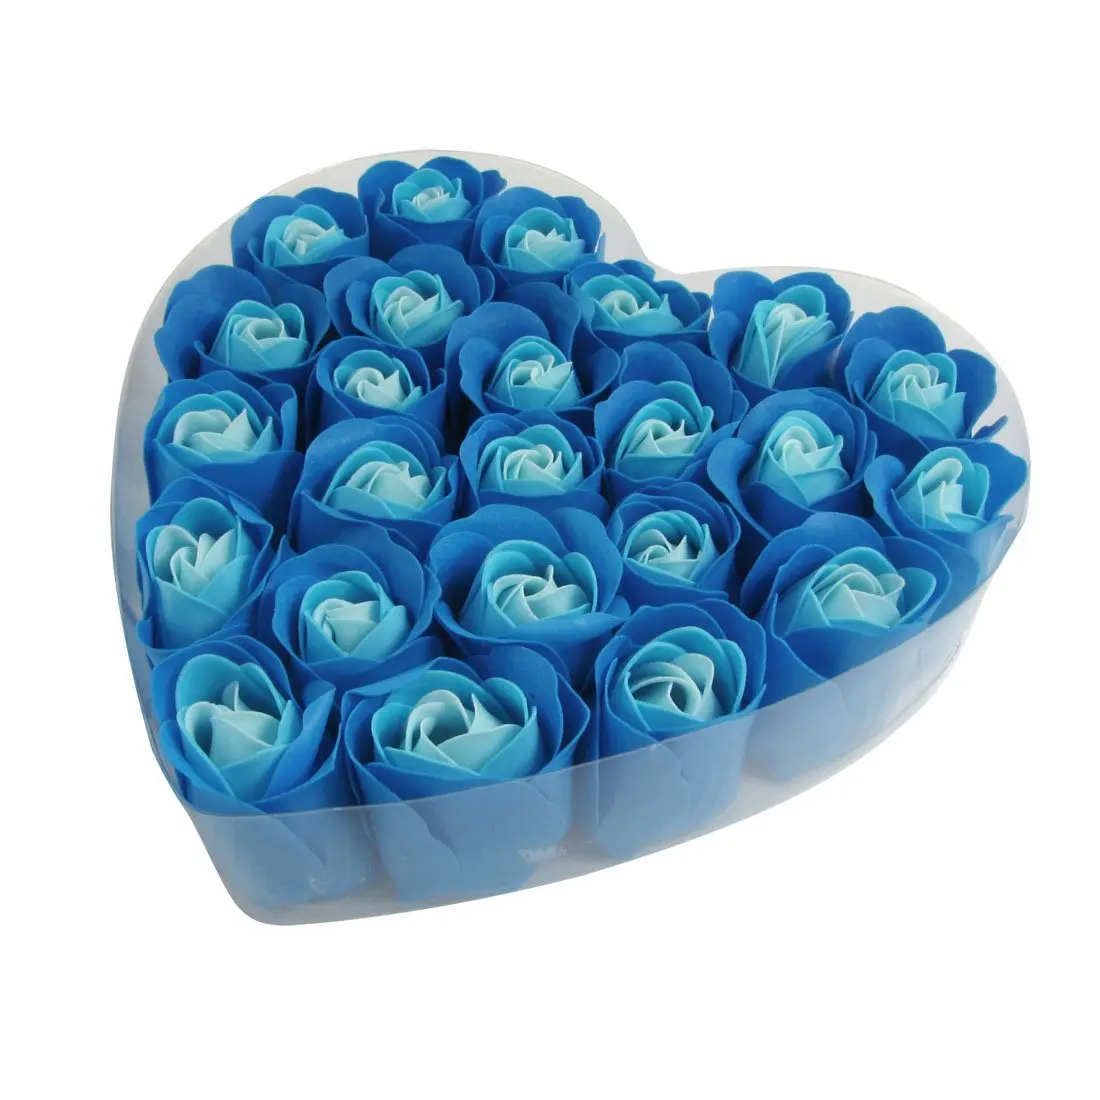 Новый 24 шт. синий душистое мыло лепесток розы в сердце Box